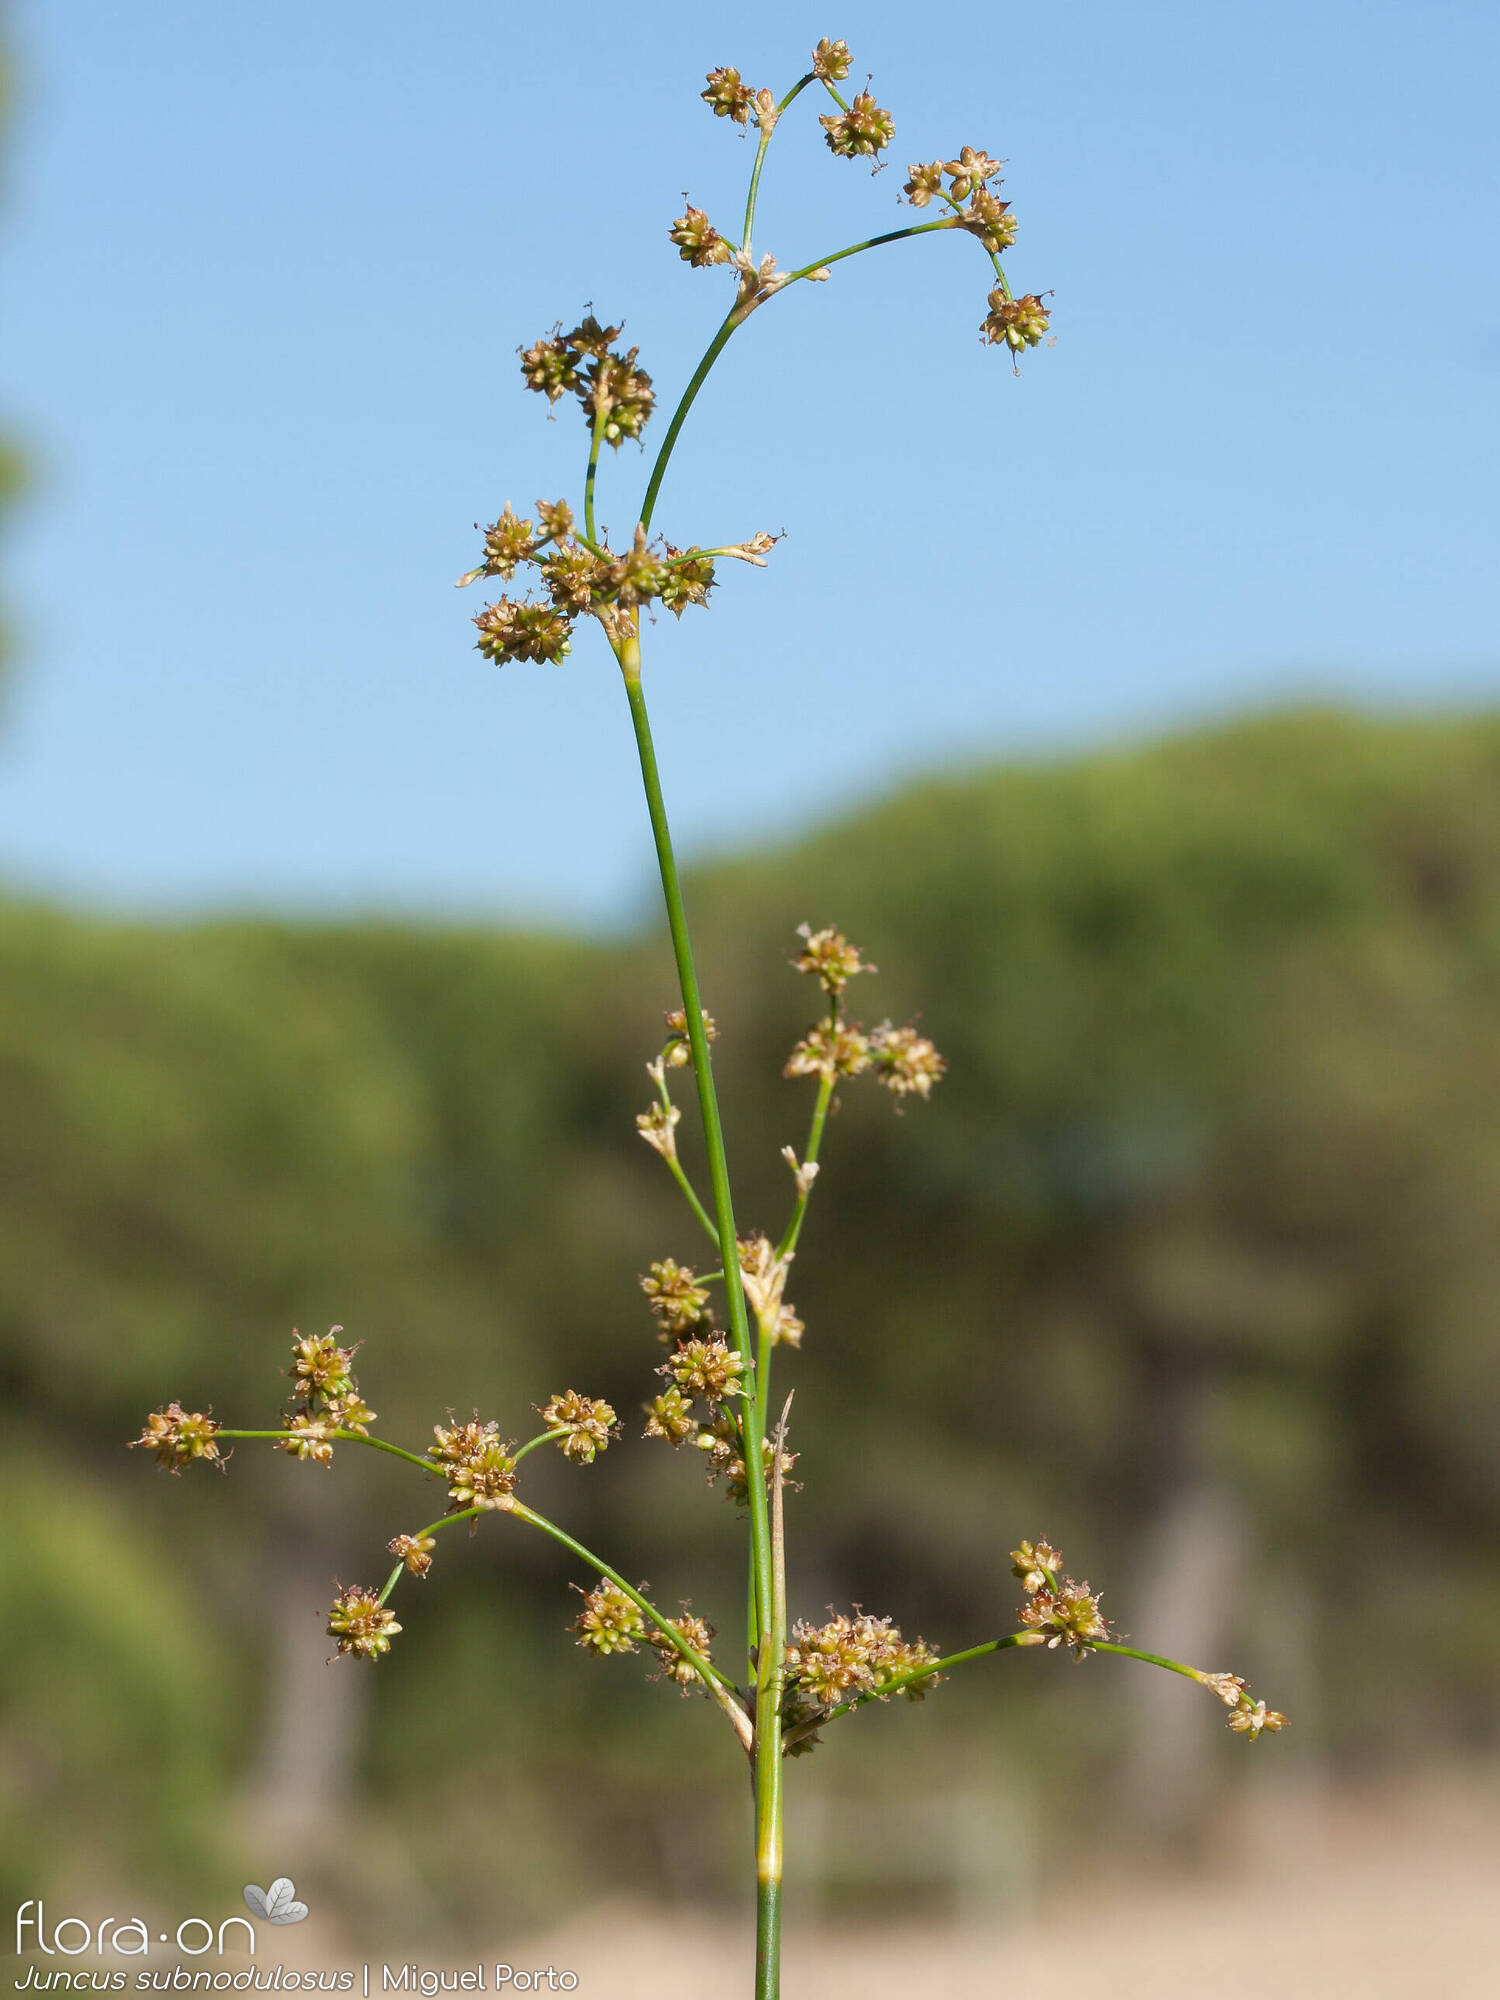 Juncus subnodulosus - Flor (geral) | Miguel Porto; CC BY-NC 4.0